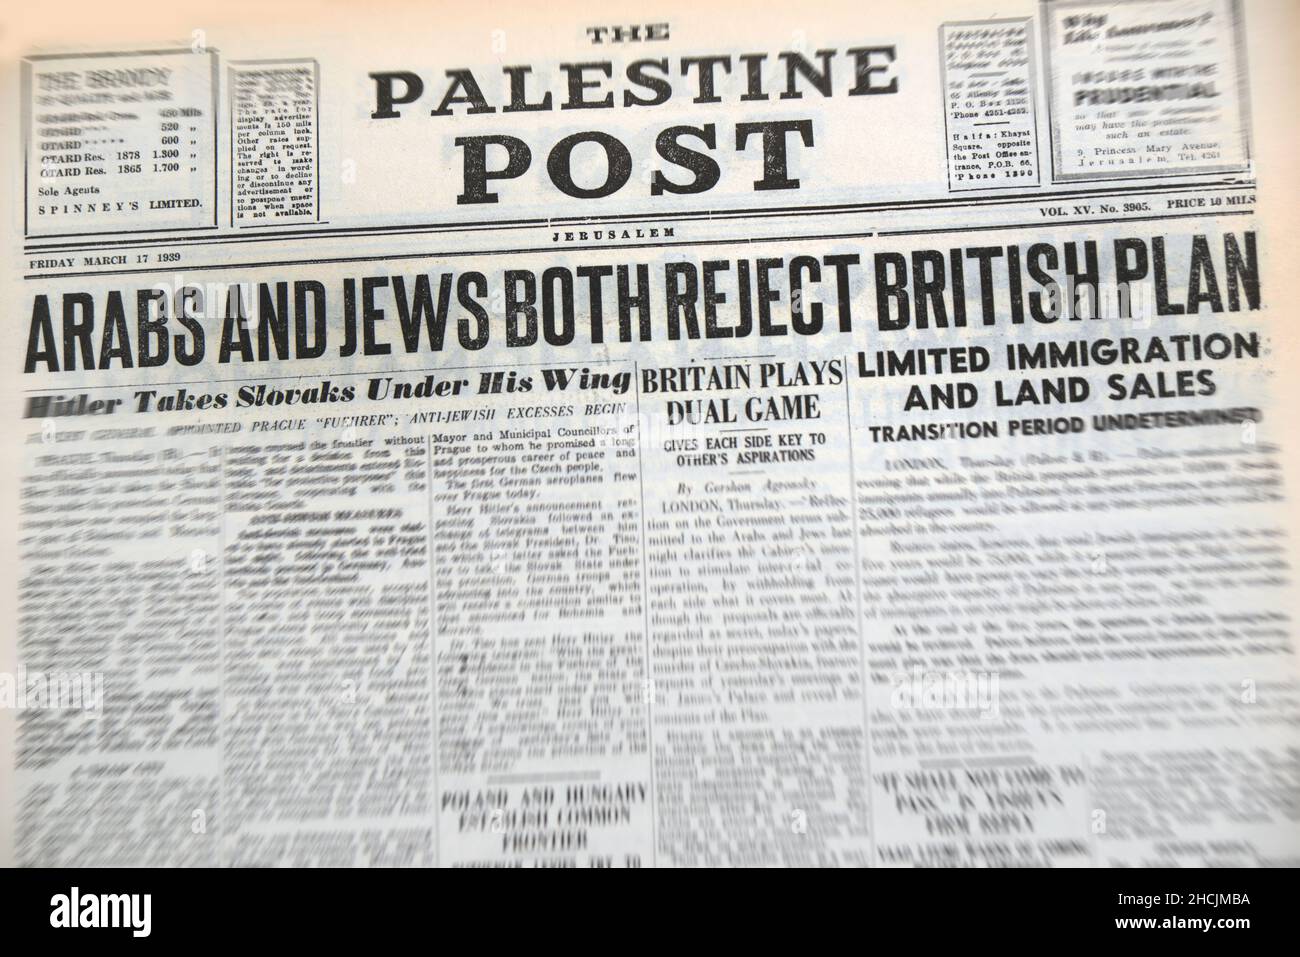 Schlagzeile der israelischen Zeitung mit einem historischen Ereignis - Araber und Juden lehnen britischen Plan ab, 1939 Stockfoto